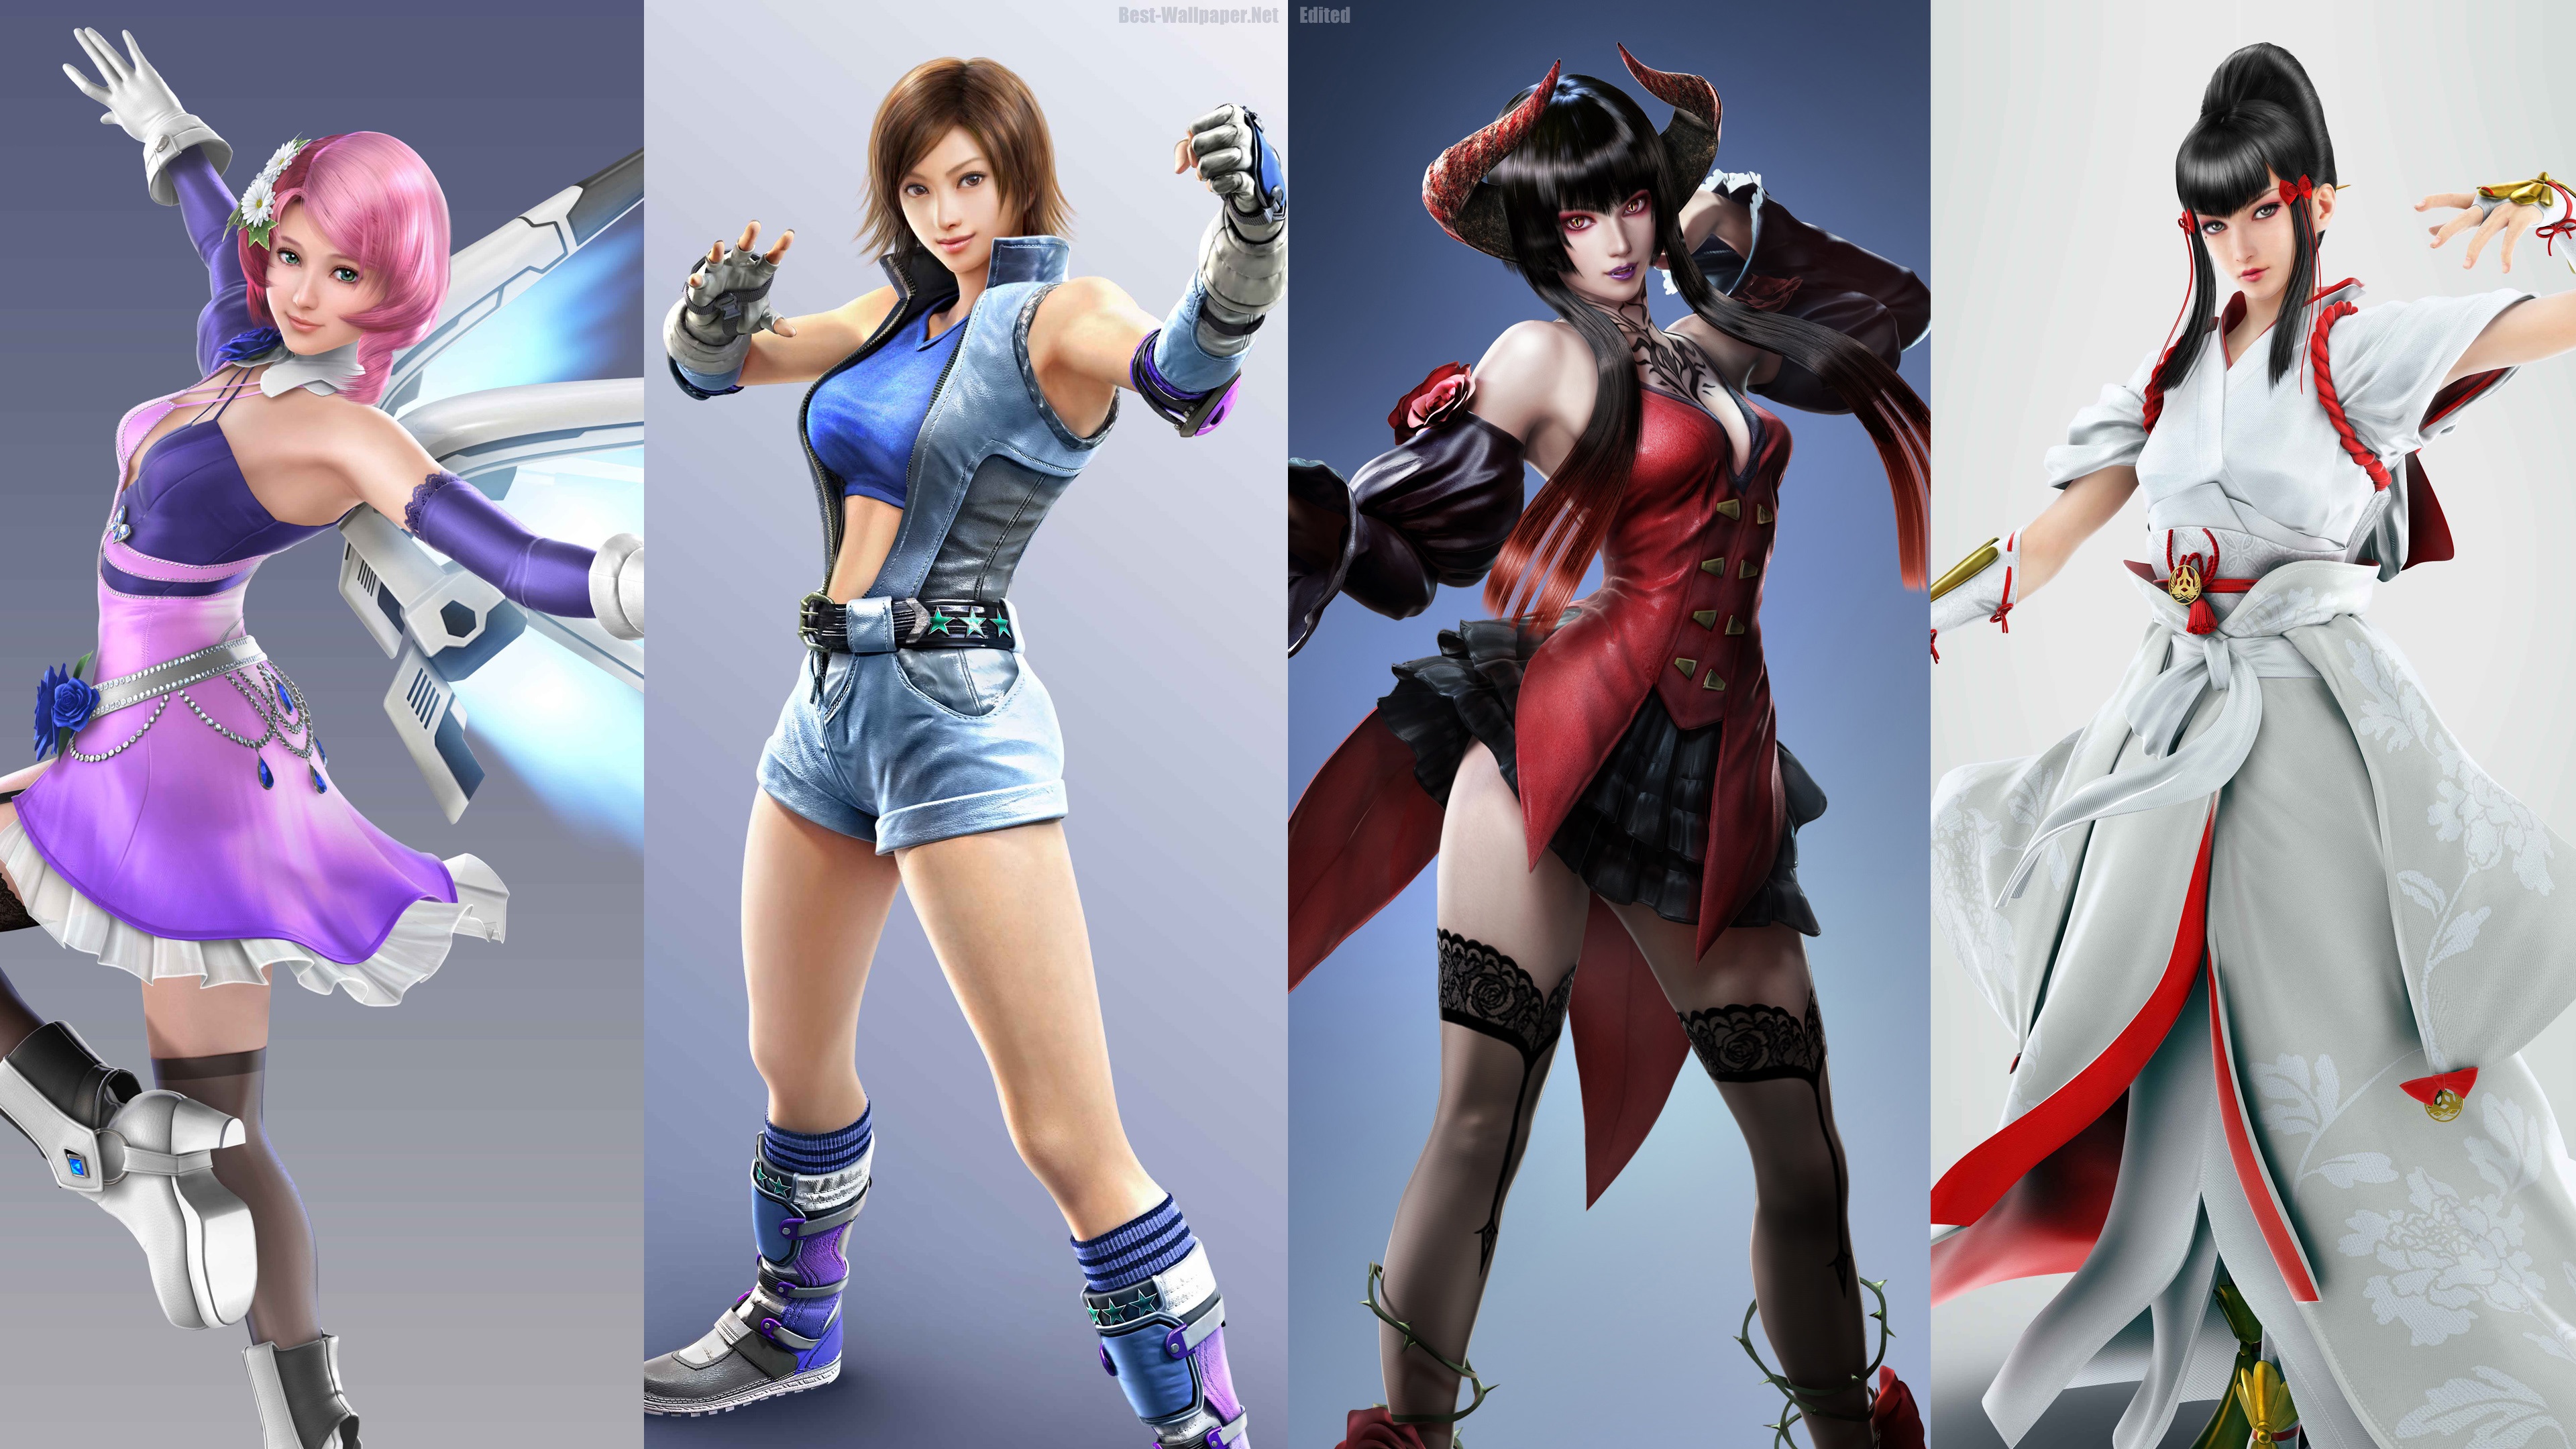 Wallpaper Tekken 7, Four Beautiful Girls - Alisa Bosconovitch Tekken 7 - HD Wallpaper 